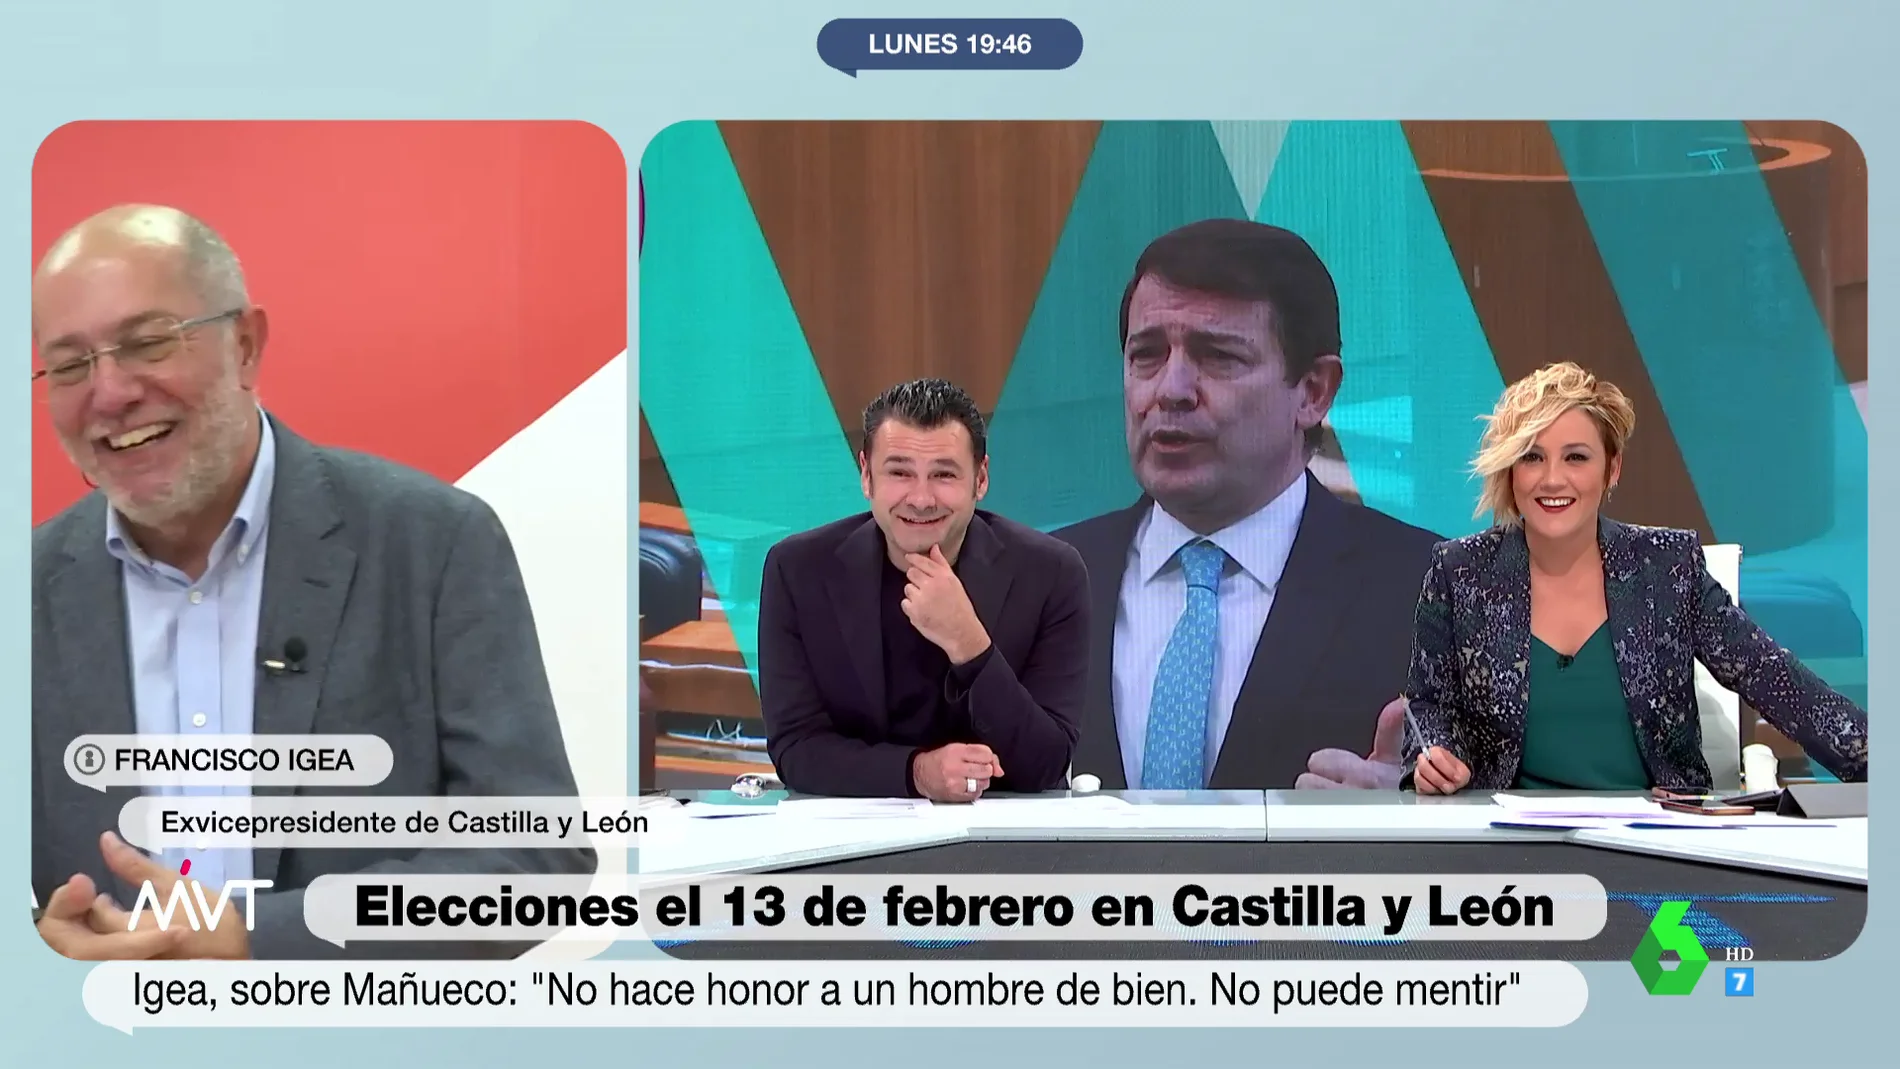   La broma de Cristina Pardo a Francisco Igea al sonar su móvil en plena entrevista tras su cese: "A ver si le está llamando Mañueco..."